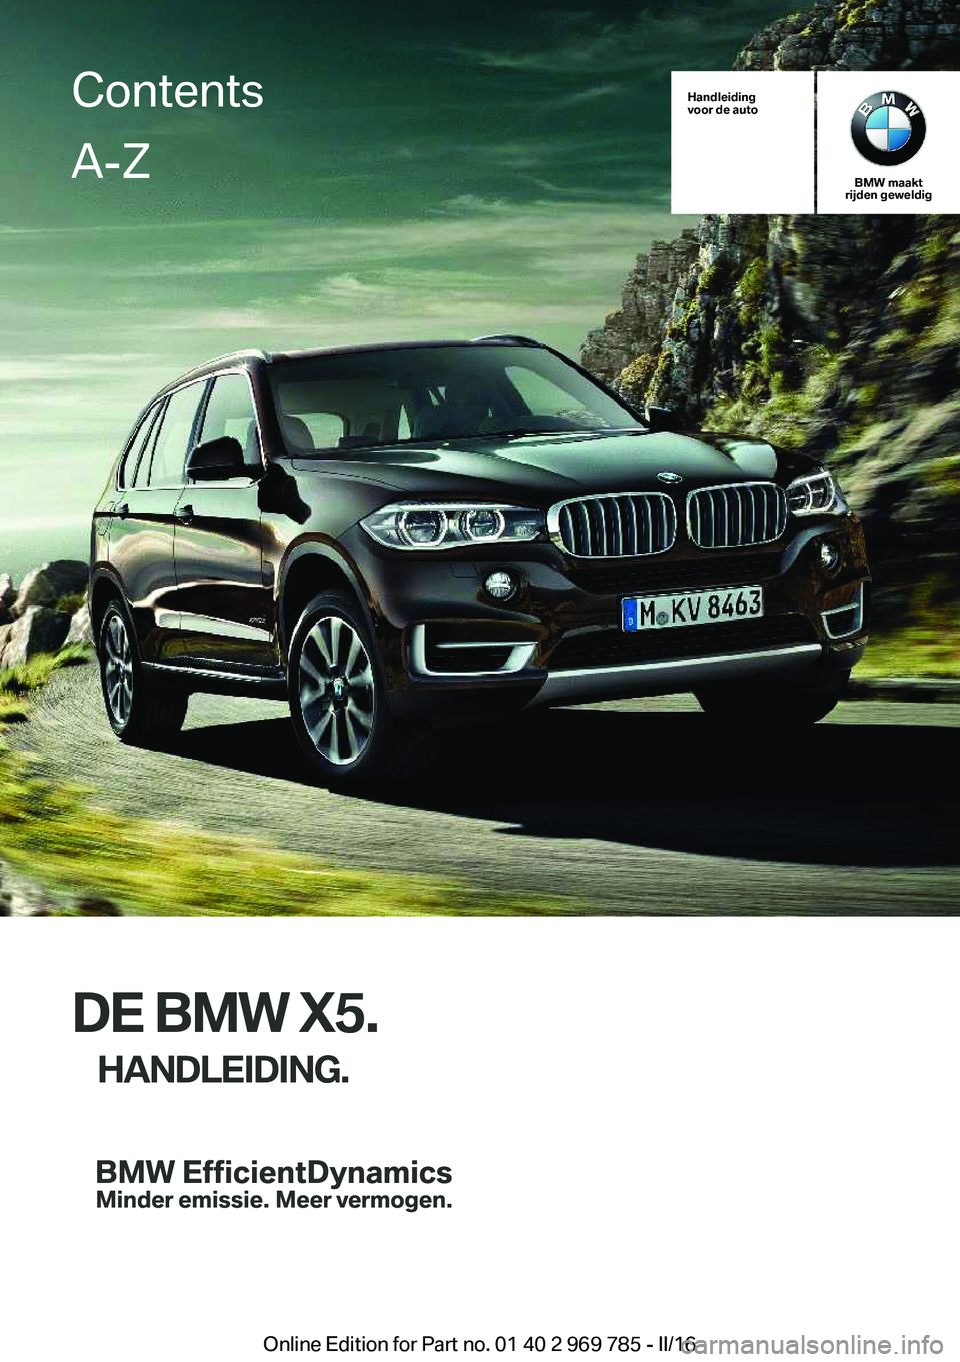 BMW X5 2016  Instructieboekjes (in Dutch) Handleiding
voor de auto
BMW maakt
rijden geweldig
DE BMW X5.
HANDLEIDING.
ContentsA-Z
Online Edition for Part no. 01 40 2 969 785 - II/16   